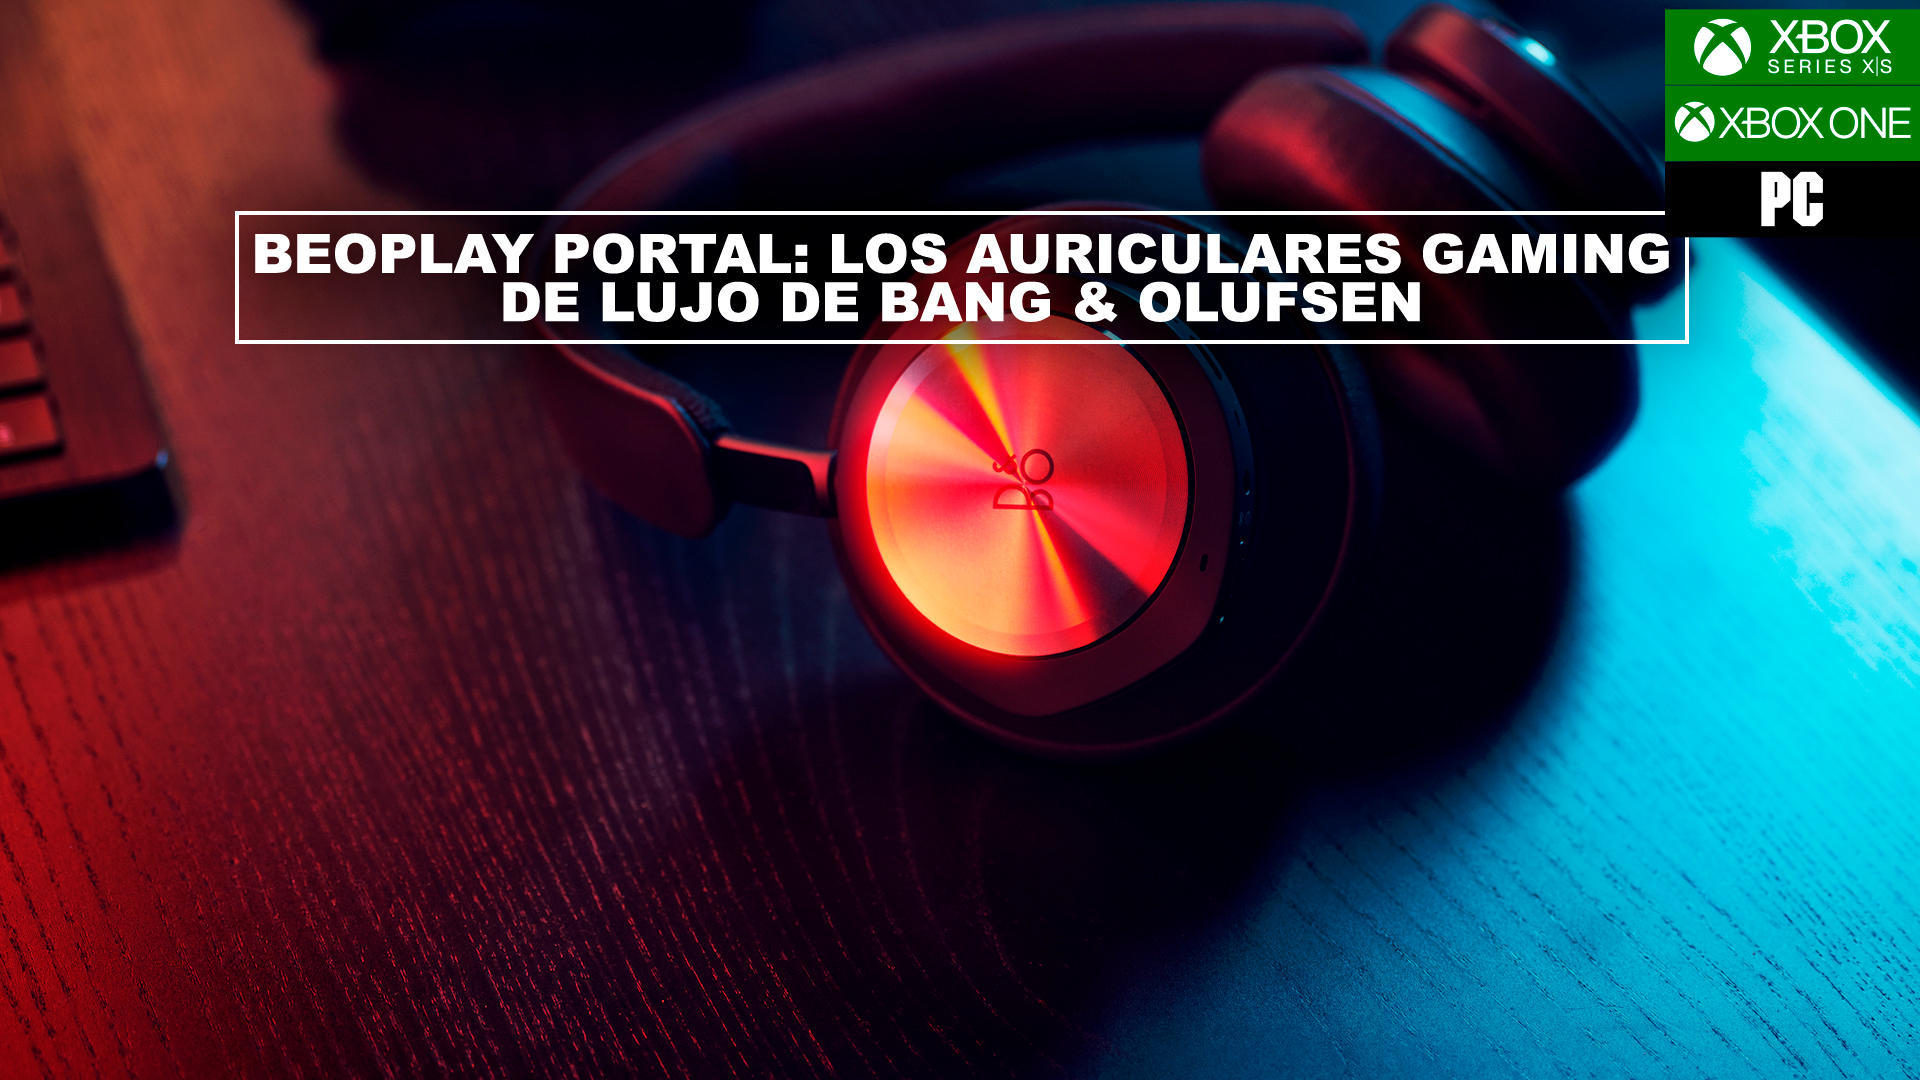 Beoplay Portal: Los auriculares gaming de lujo de Bang & Olufsen para Xbox